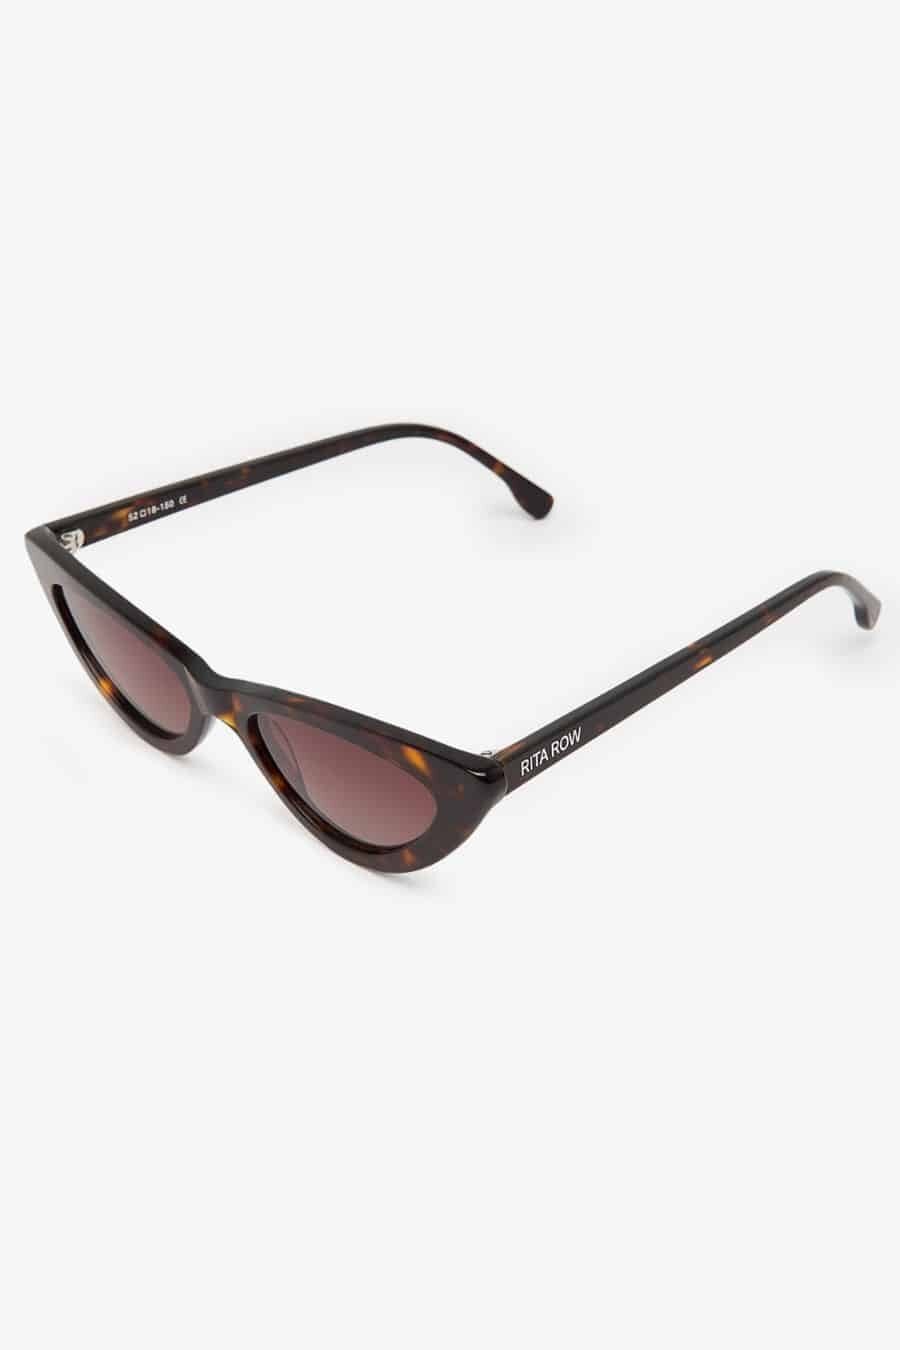 Rita Row - Sunglasses Fagus